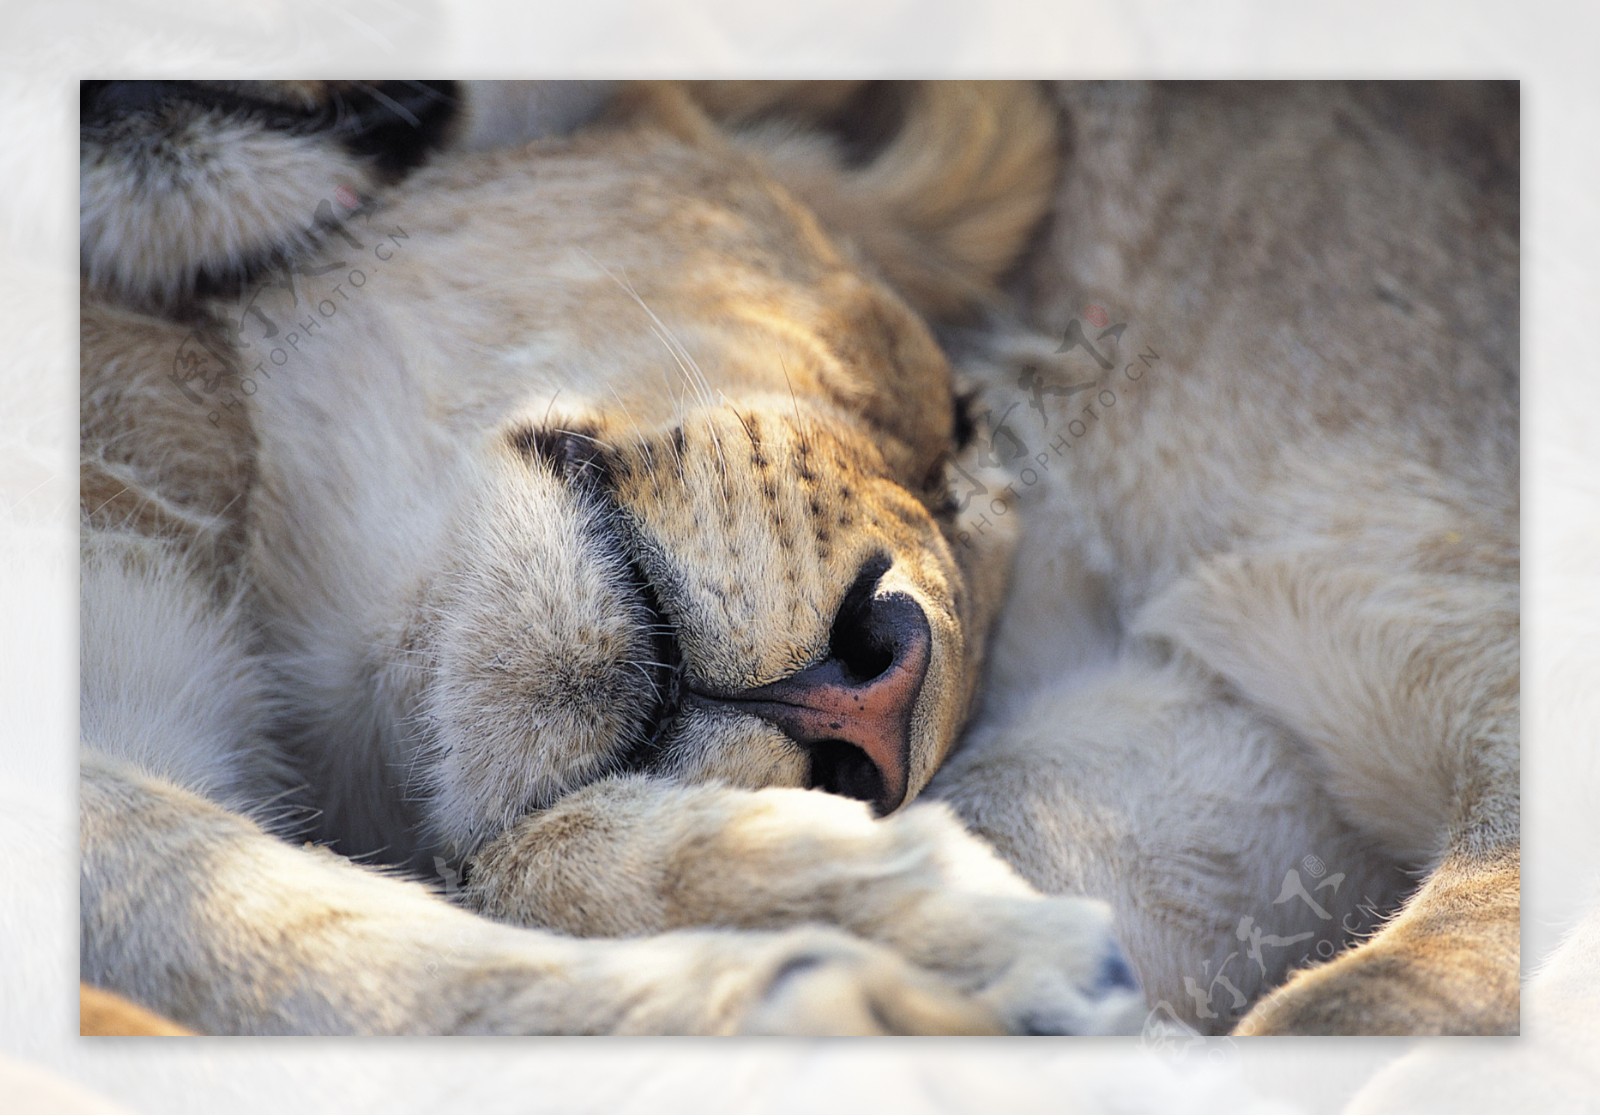 睡觉的狮子图片